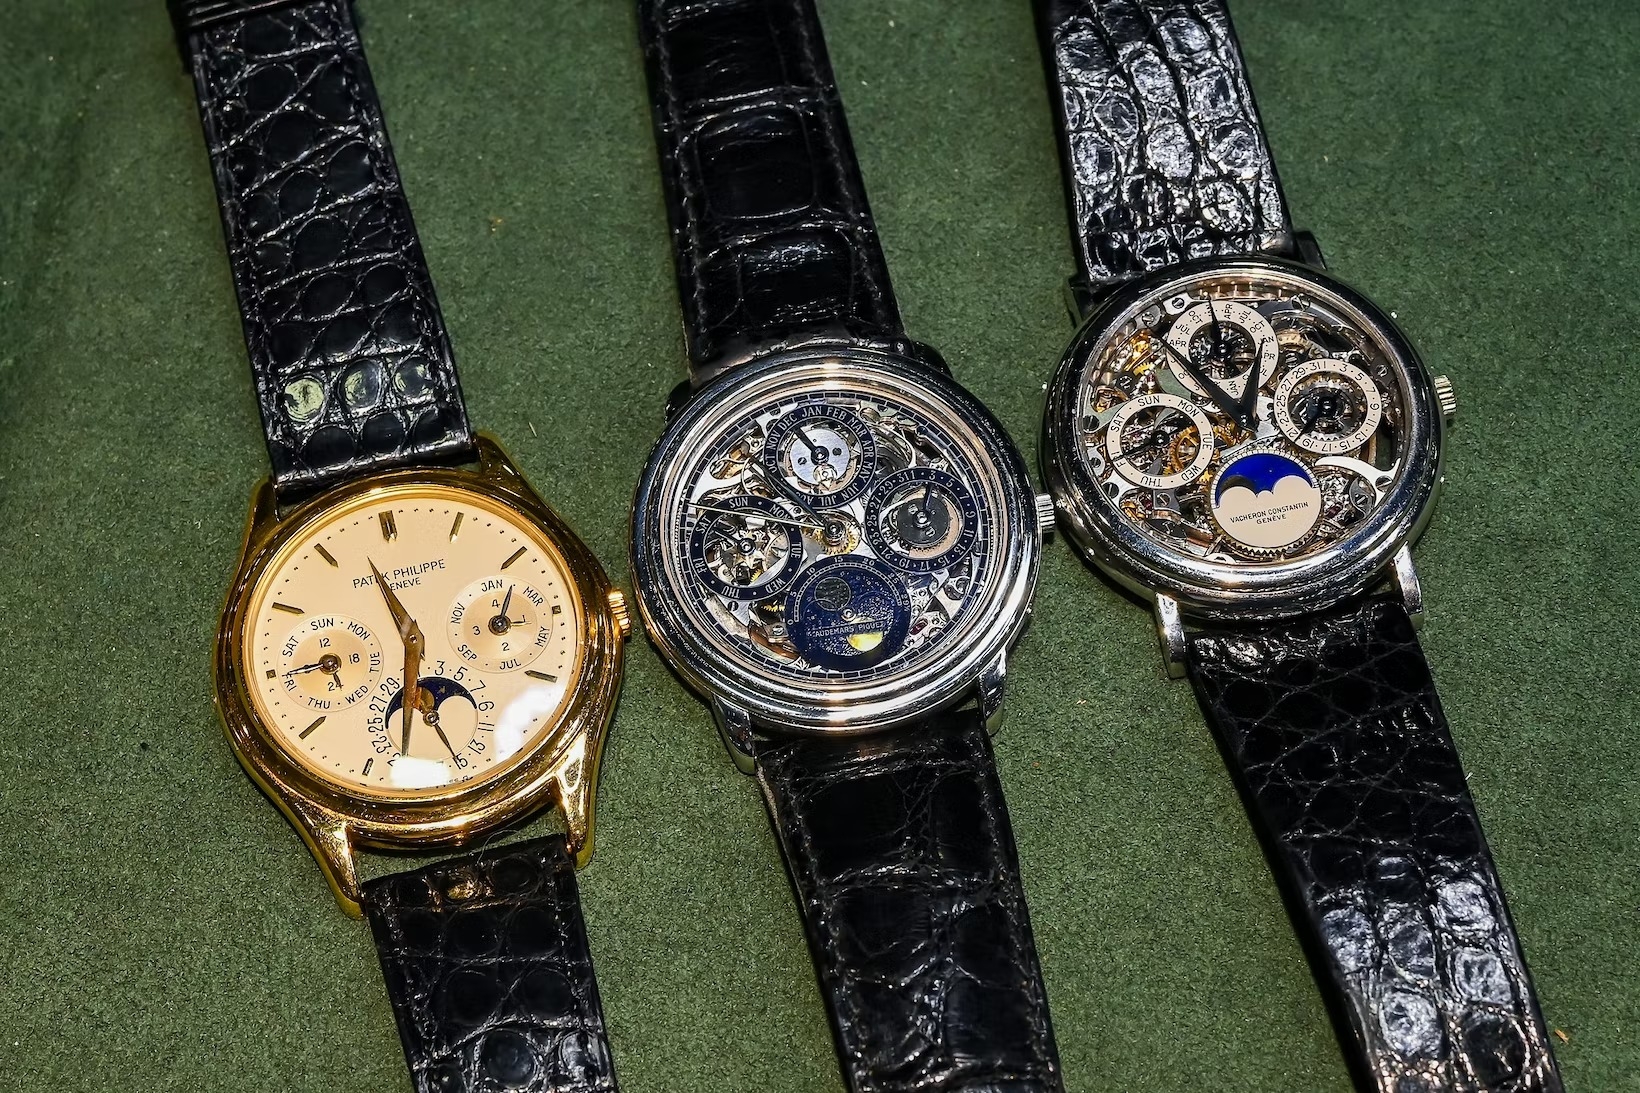 Tuyệt Chiêu “Chạy” Siêu Chính Xác Của Đồng Hồ Rolex: Superlative Chronometer 2